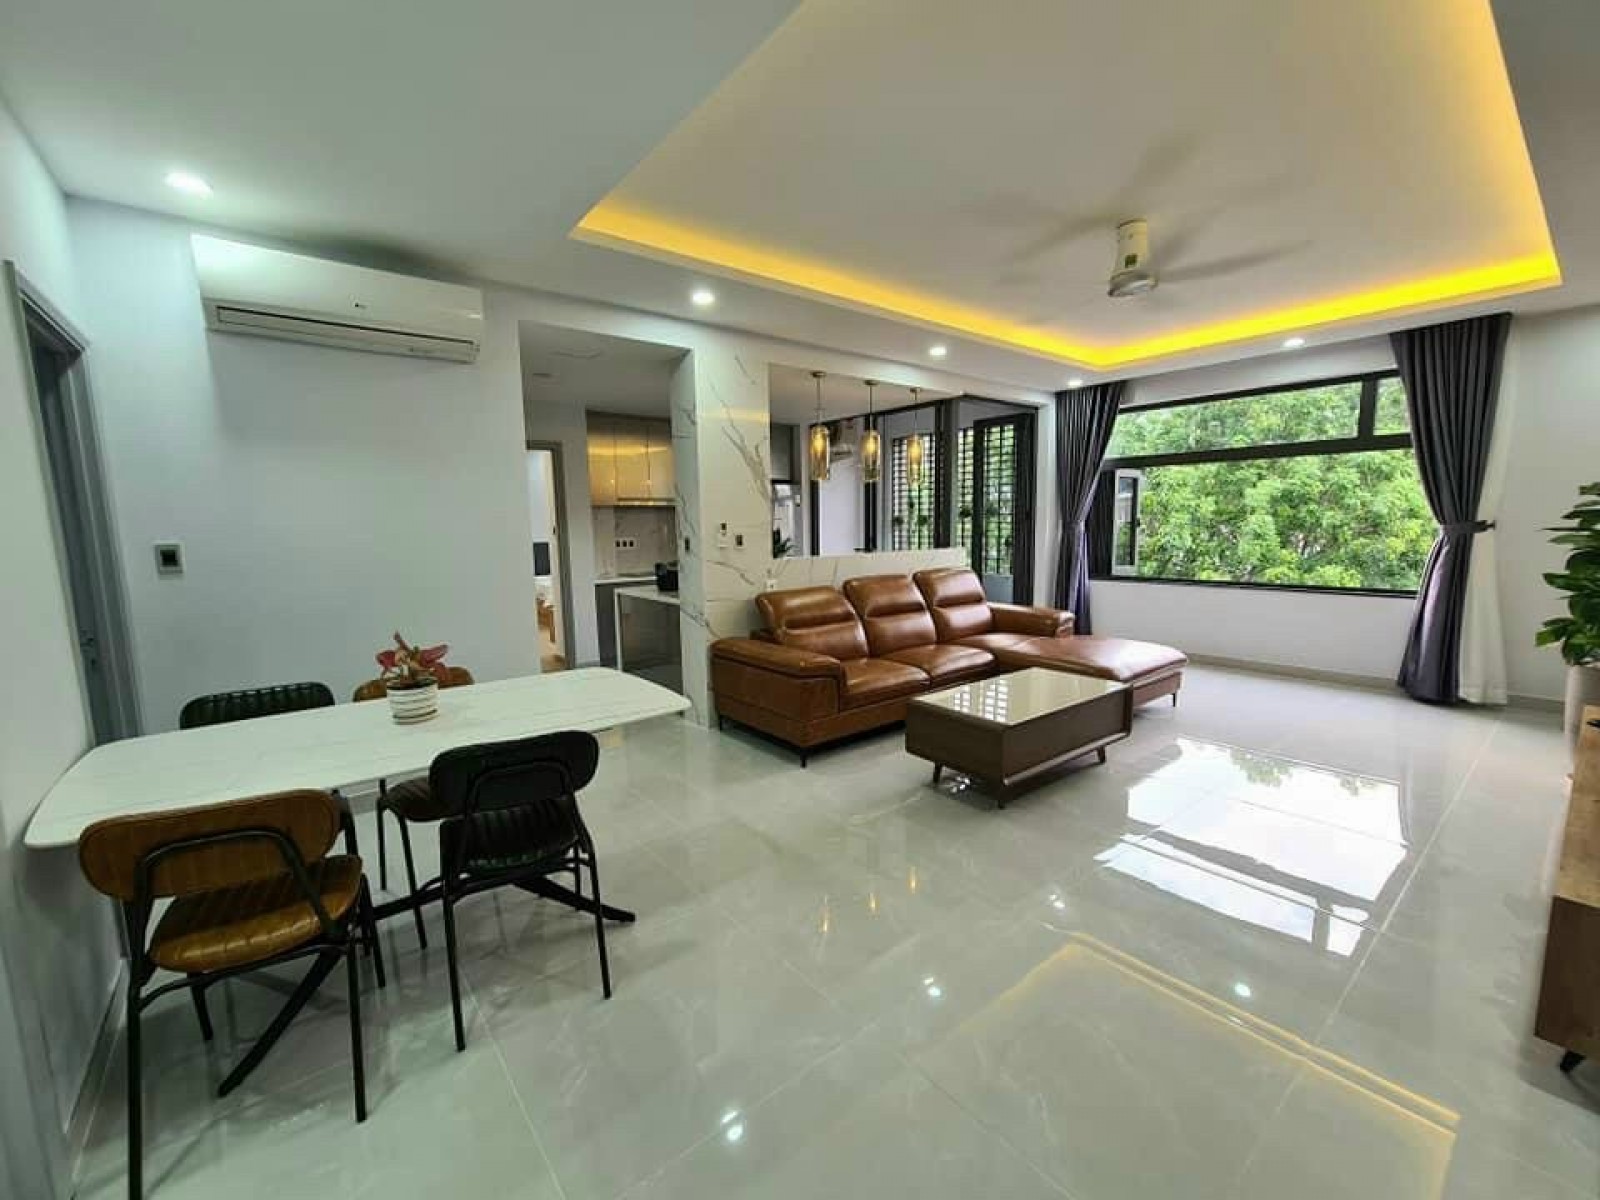 Cho thuê căn hộ Green Valley, Phú Mỹ Hưng, Q7 DT: 120m2, giá 19 tr/tháng nhà đẹp đầy đủ nội thất LH: 0902857558 THANH PHONG.